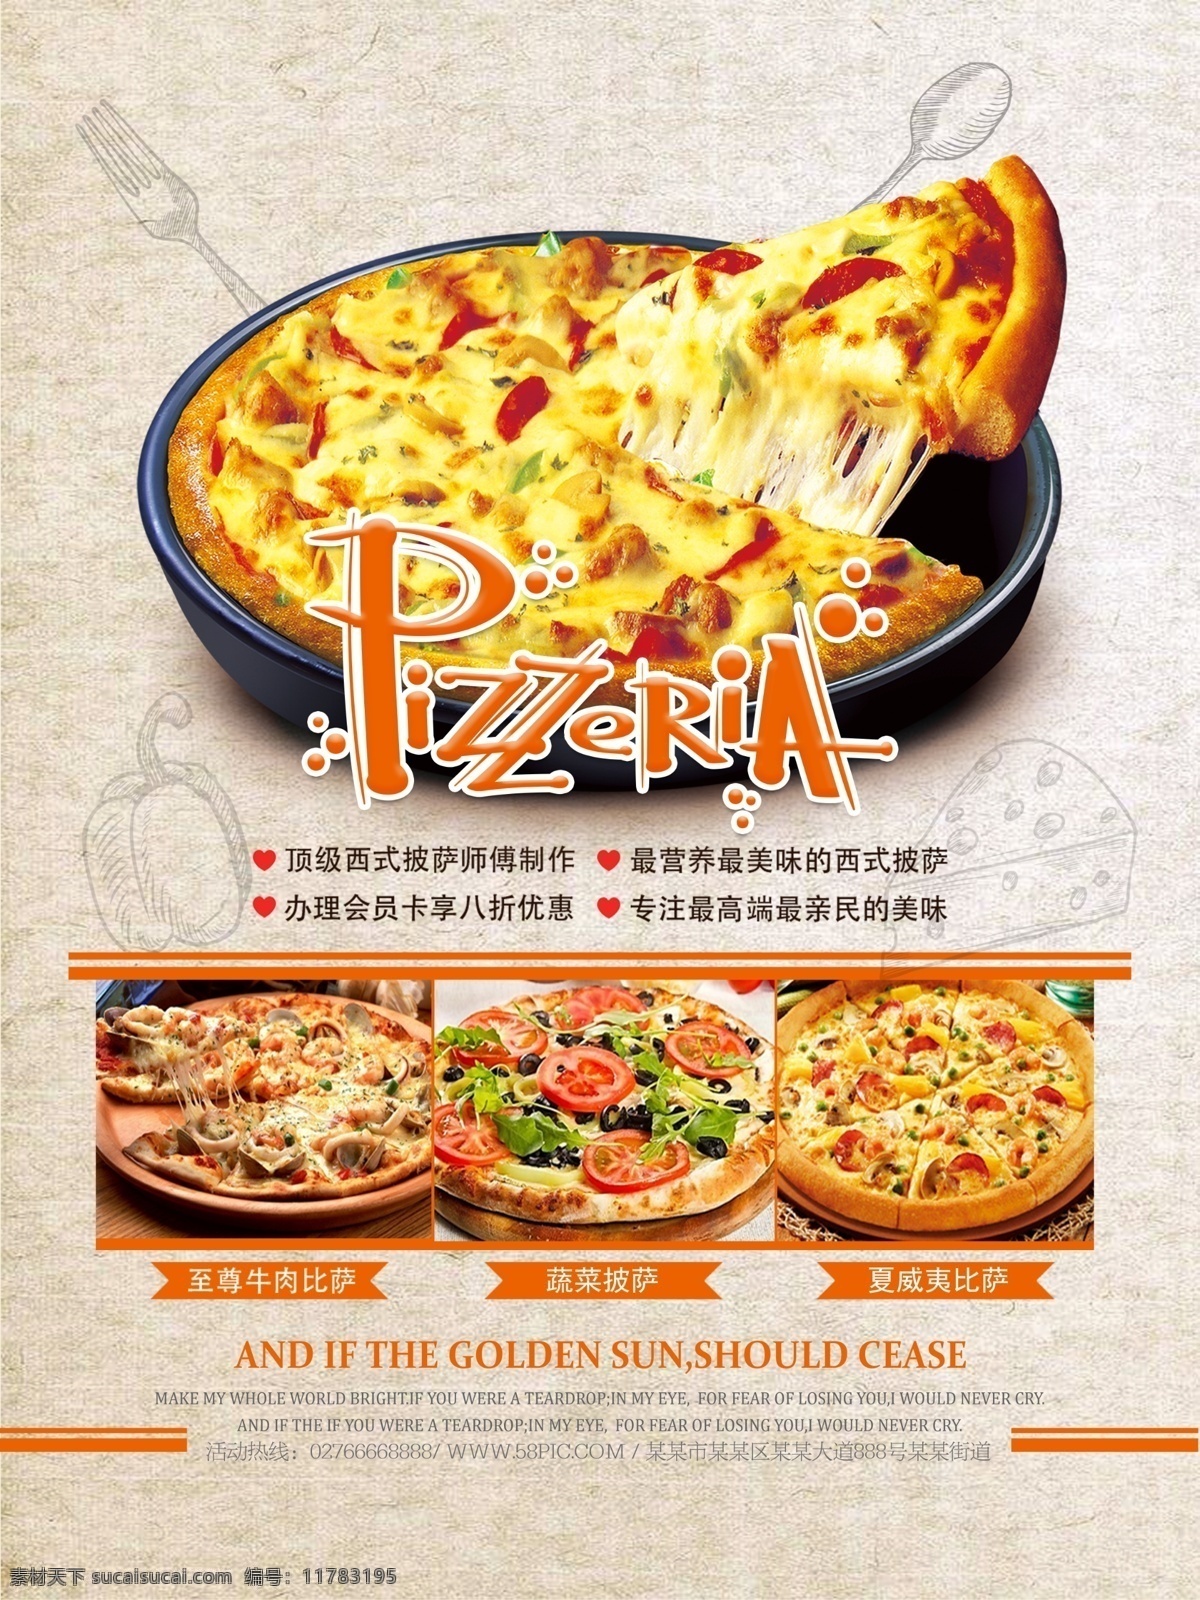 披萨 美食 品牌 匹萨 披萨海报 披萨菜单 披萨宣传单 现烤披萨 披萨外卖 美味披萨 意大利披萨